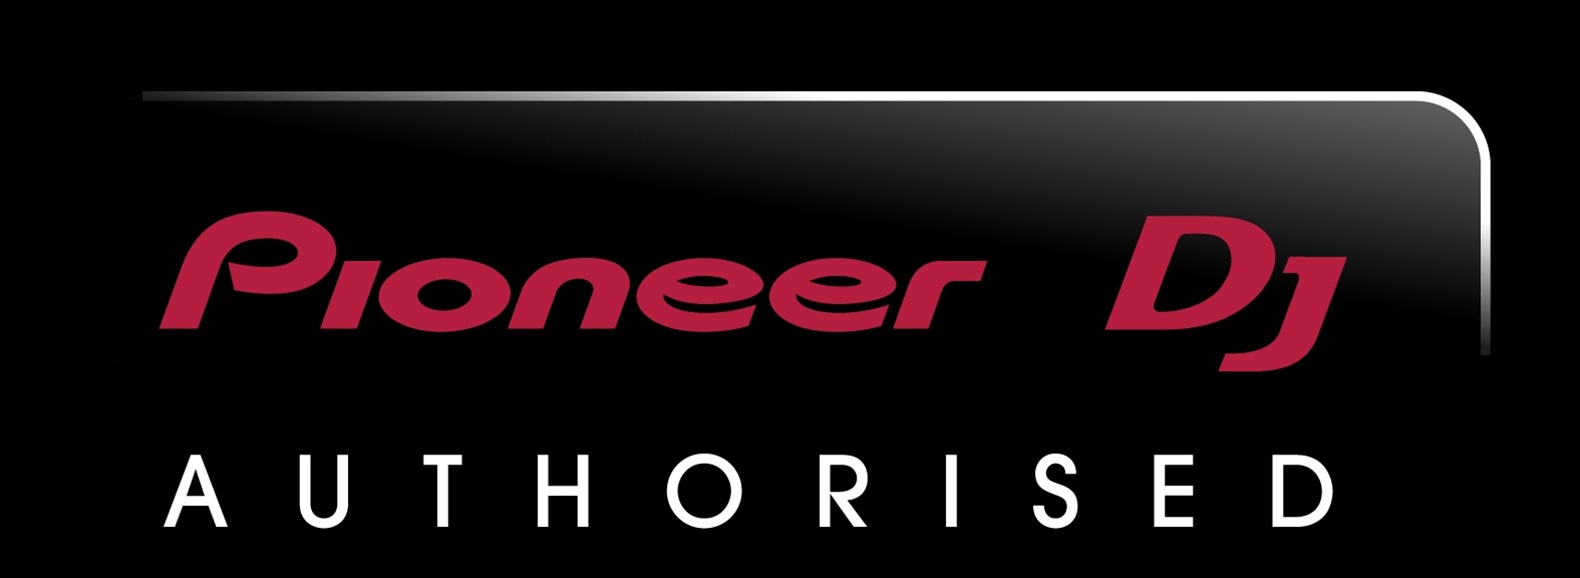 Dj Mixer Pioneer Free Download